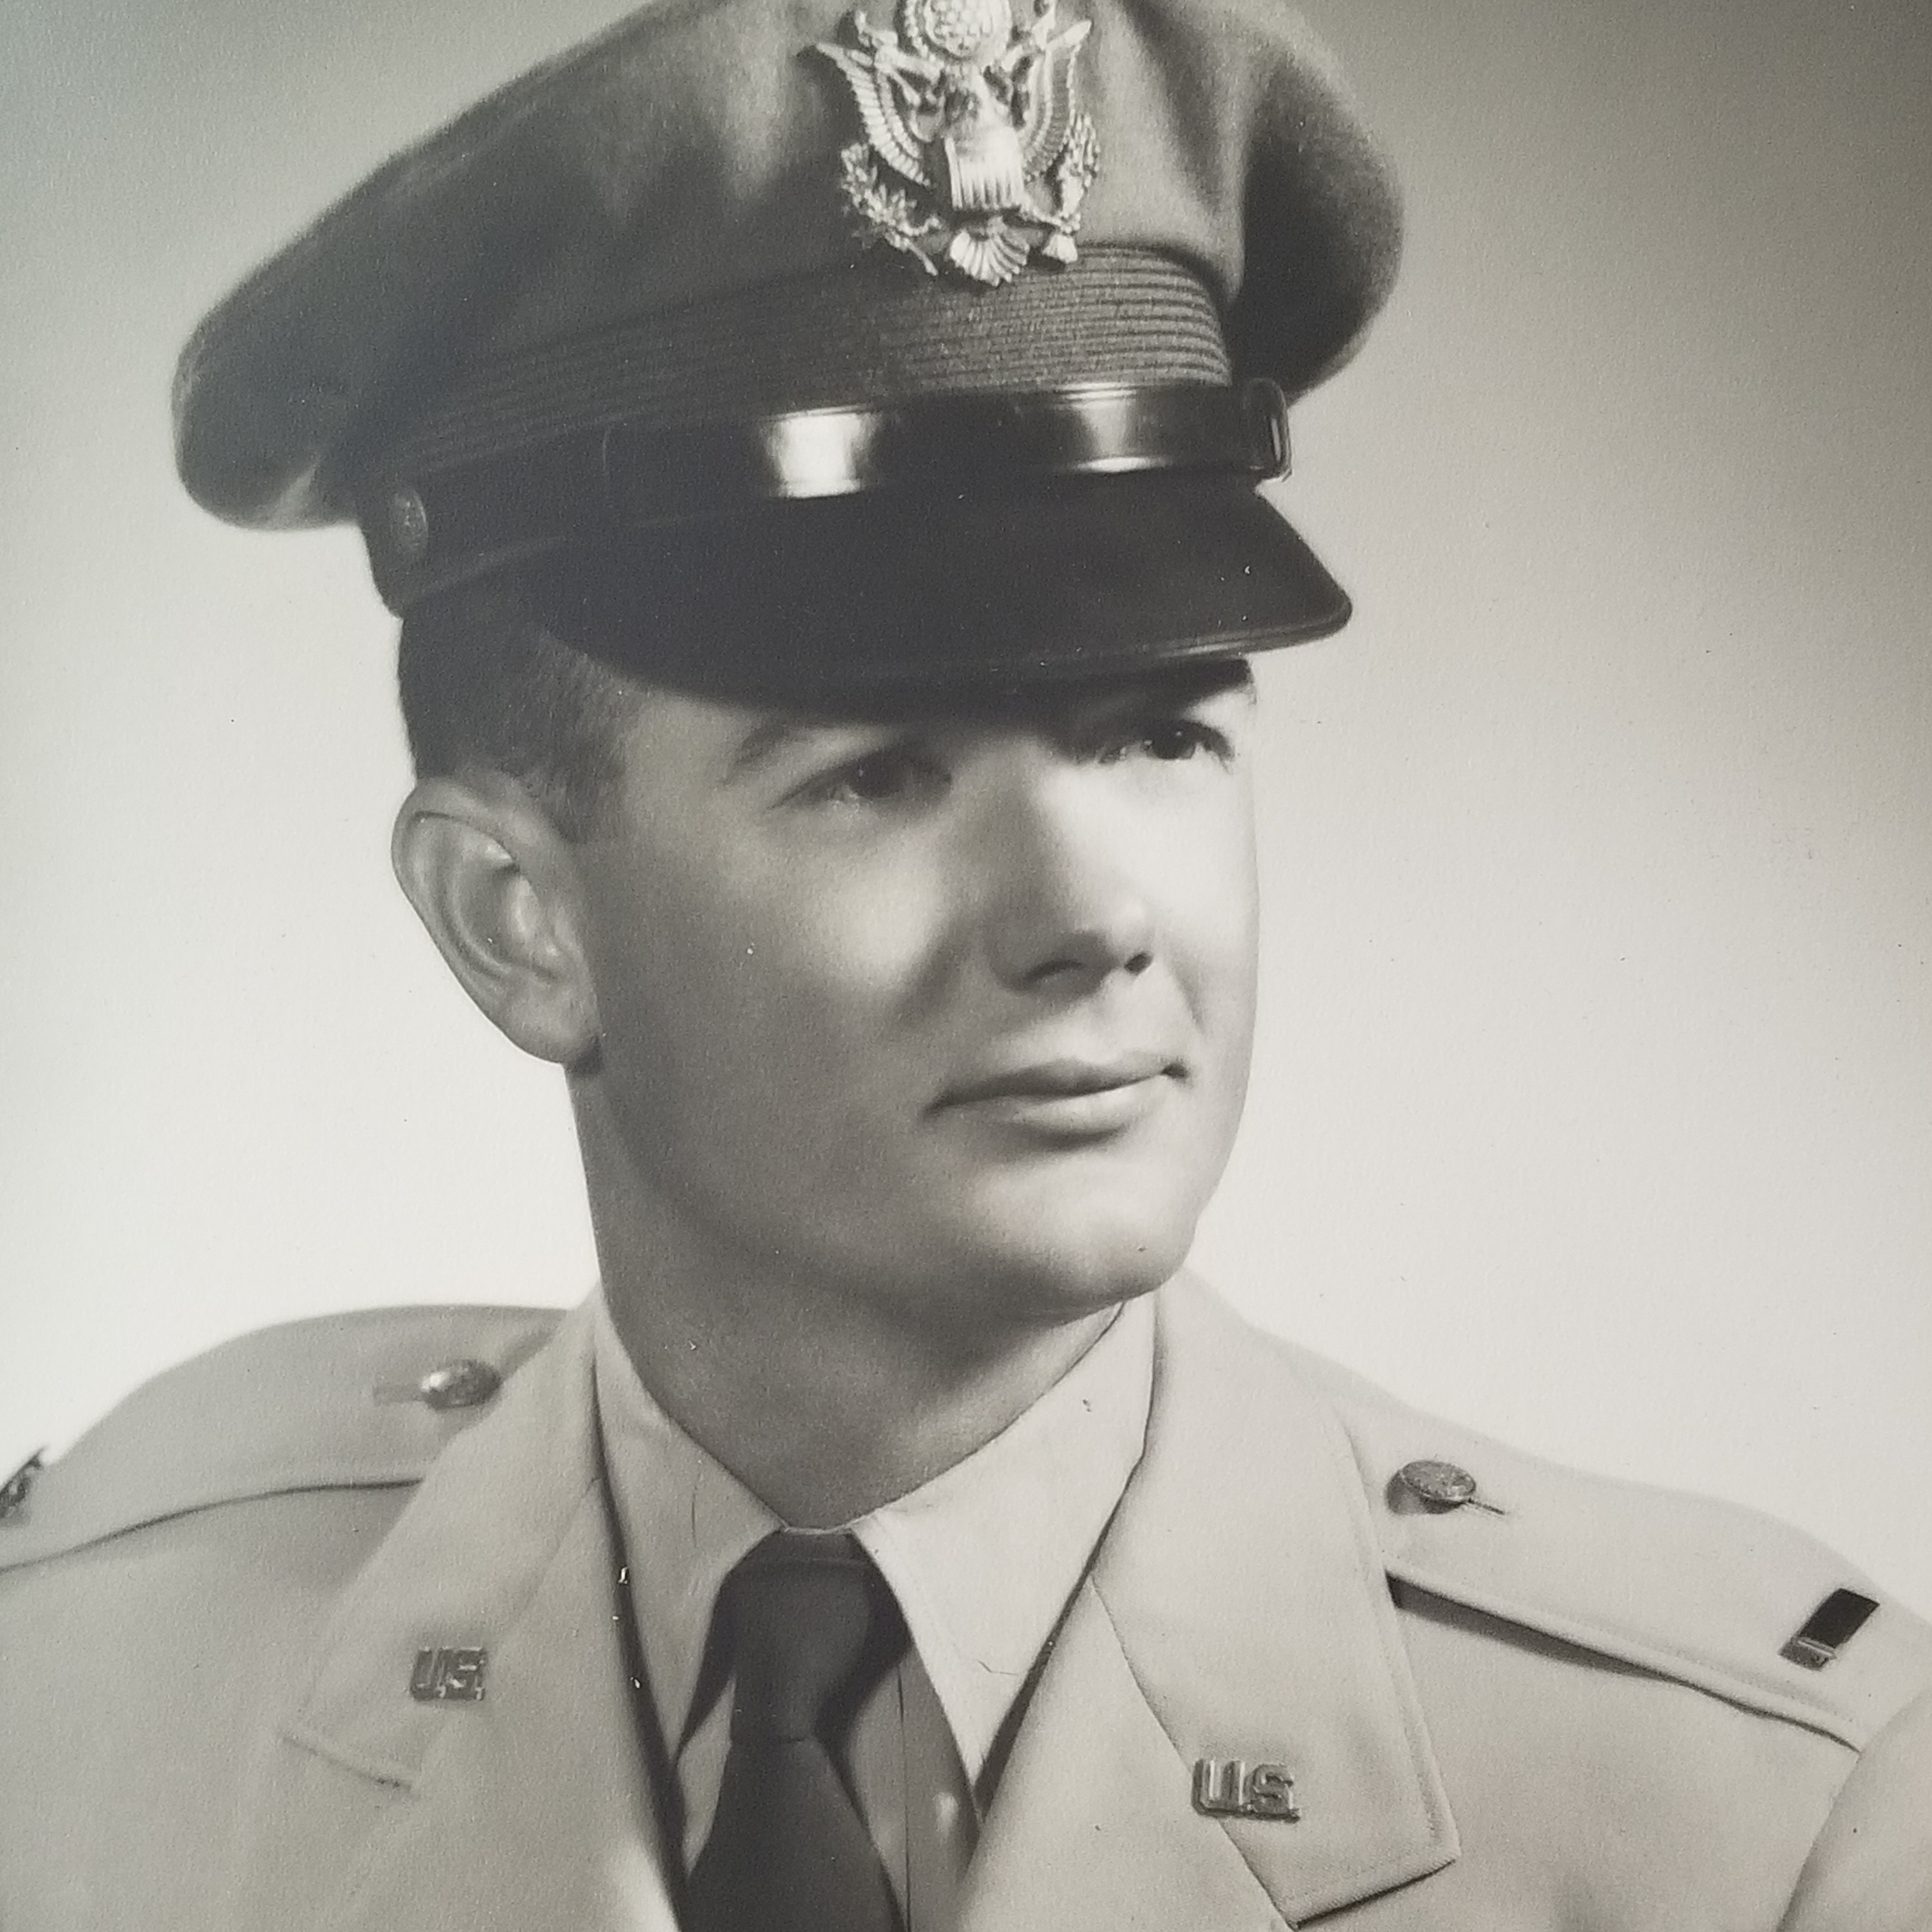 Lt. Col. Jack C. Snead, USAF(Ret.)